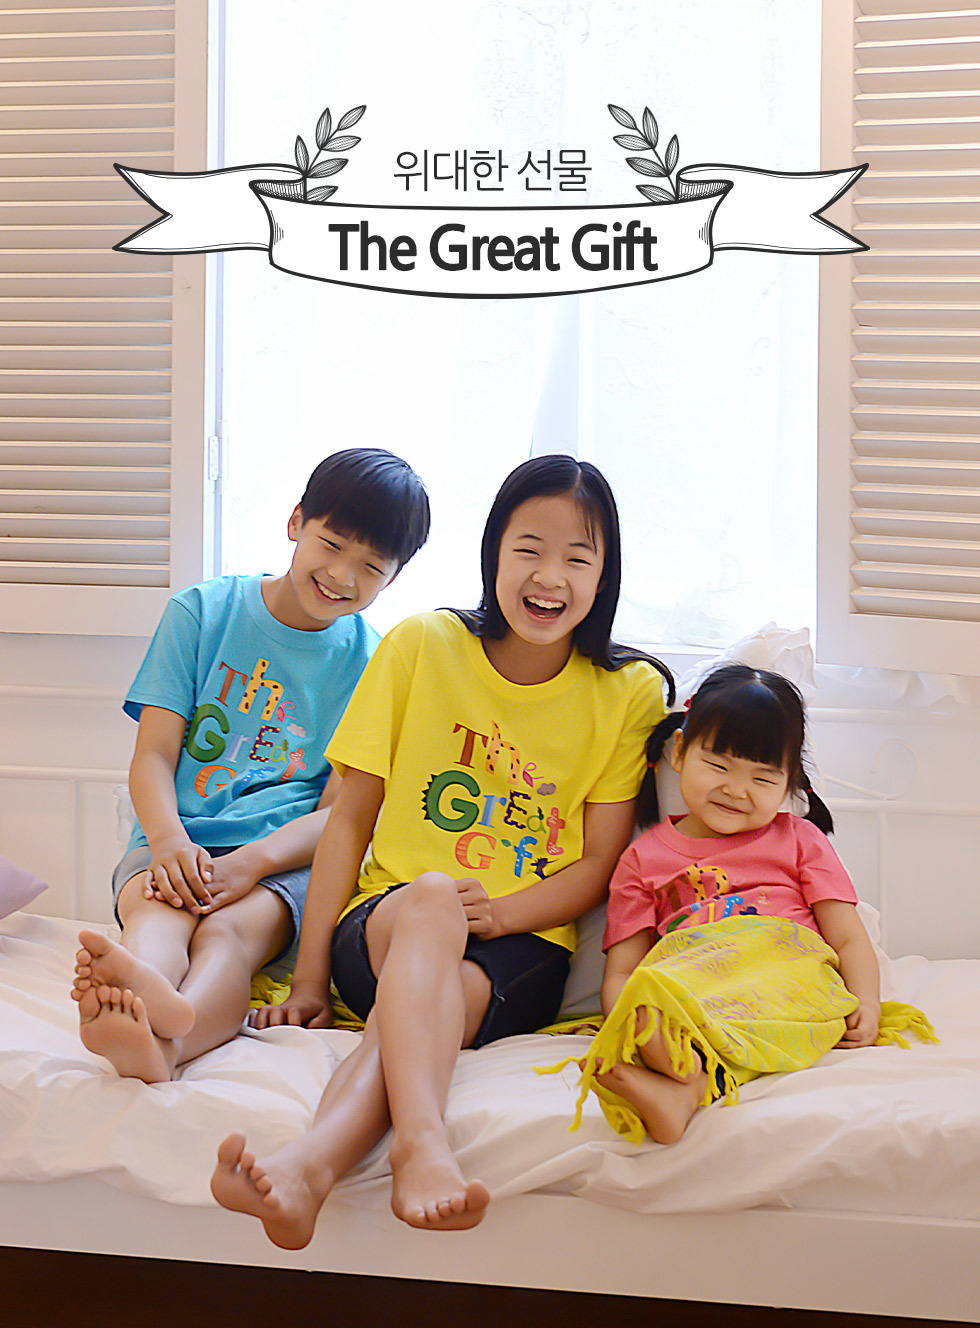 교회 단체티셔츠 위대한선물 - 동물 (The Great Gift) - 아동티셔츠(예장 합동 교단 여름성경학교 주제티셔츠 - 위대한선물) 